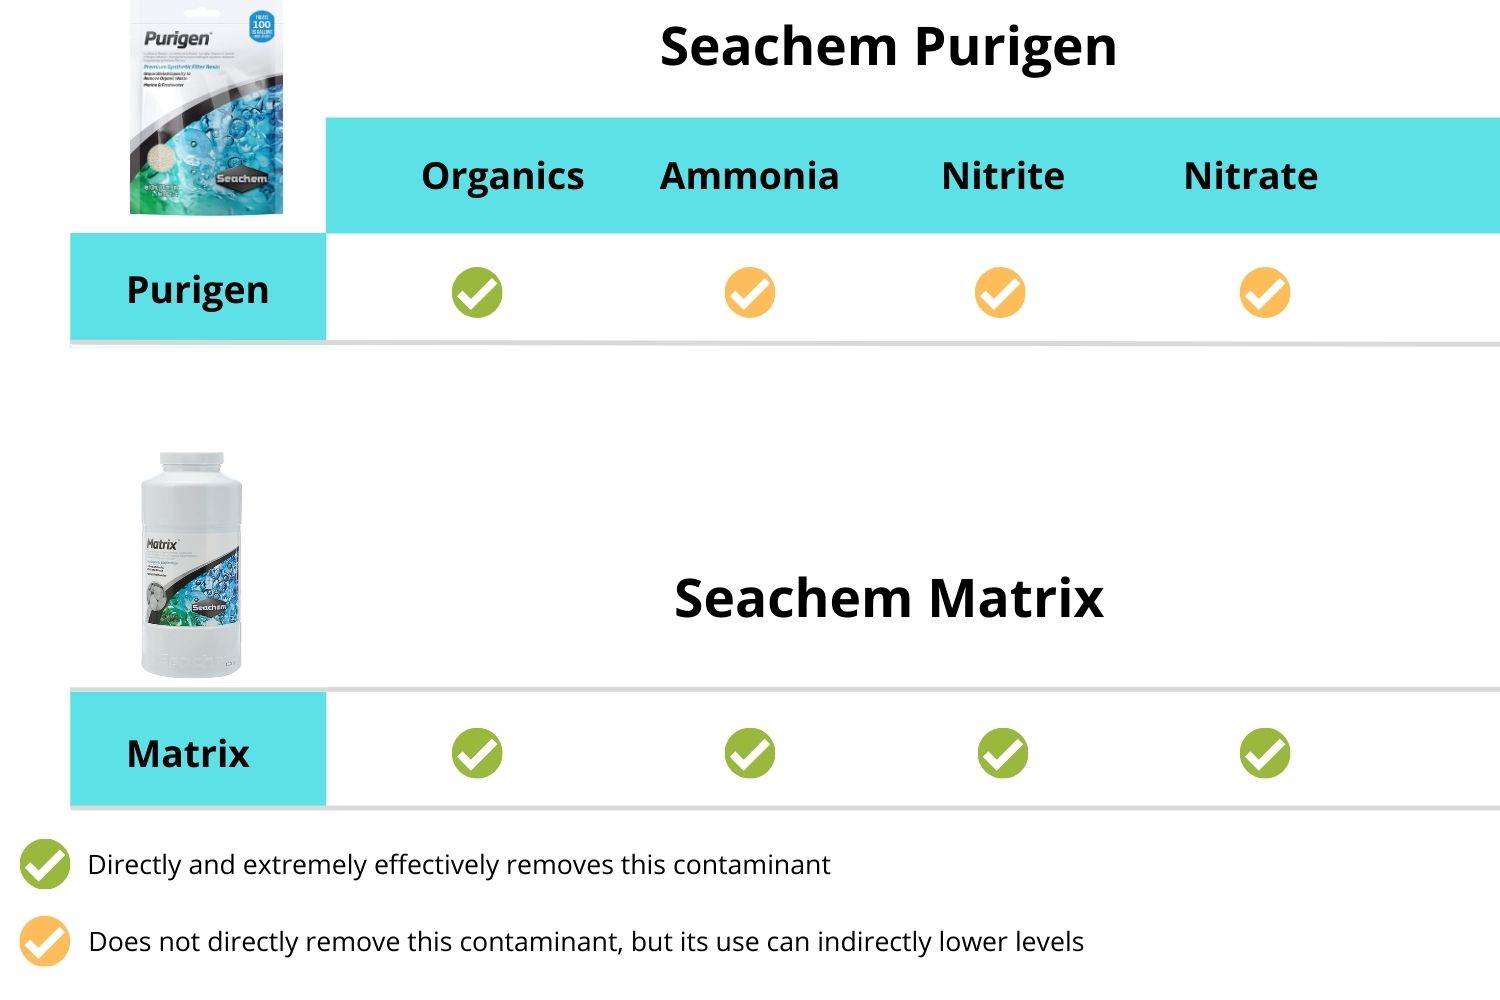 Seachem Purigen vs Seachem Matrix